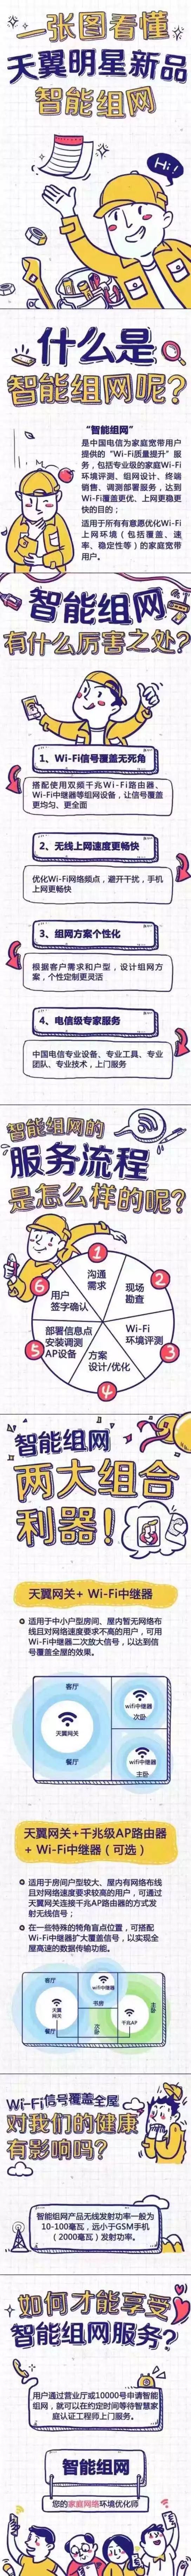 郑州电信、郑州电信宽带、郑州电信宽带办理、郑州电信宽带套餐